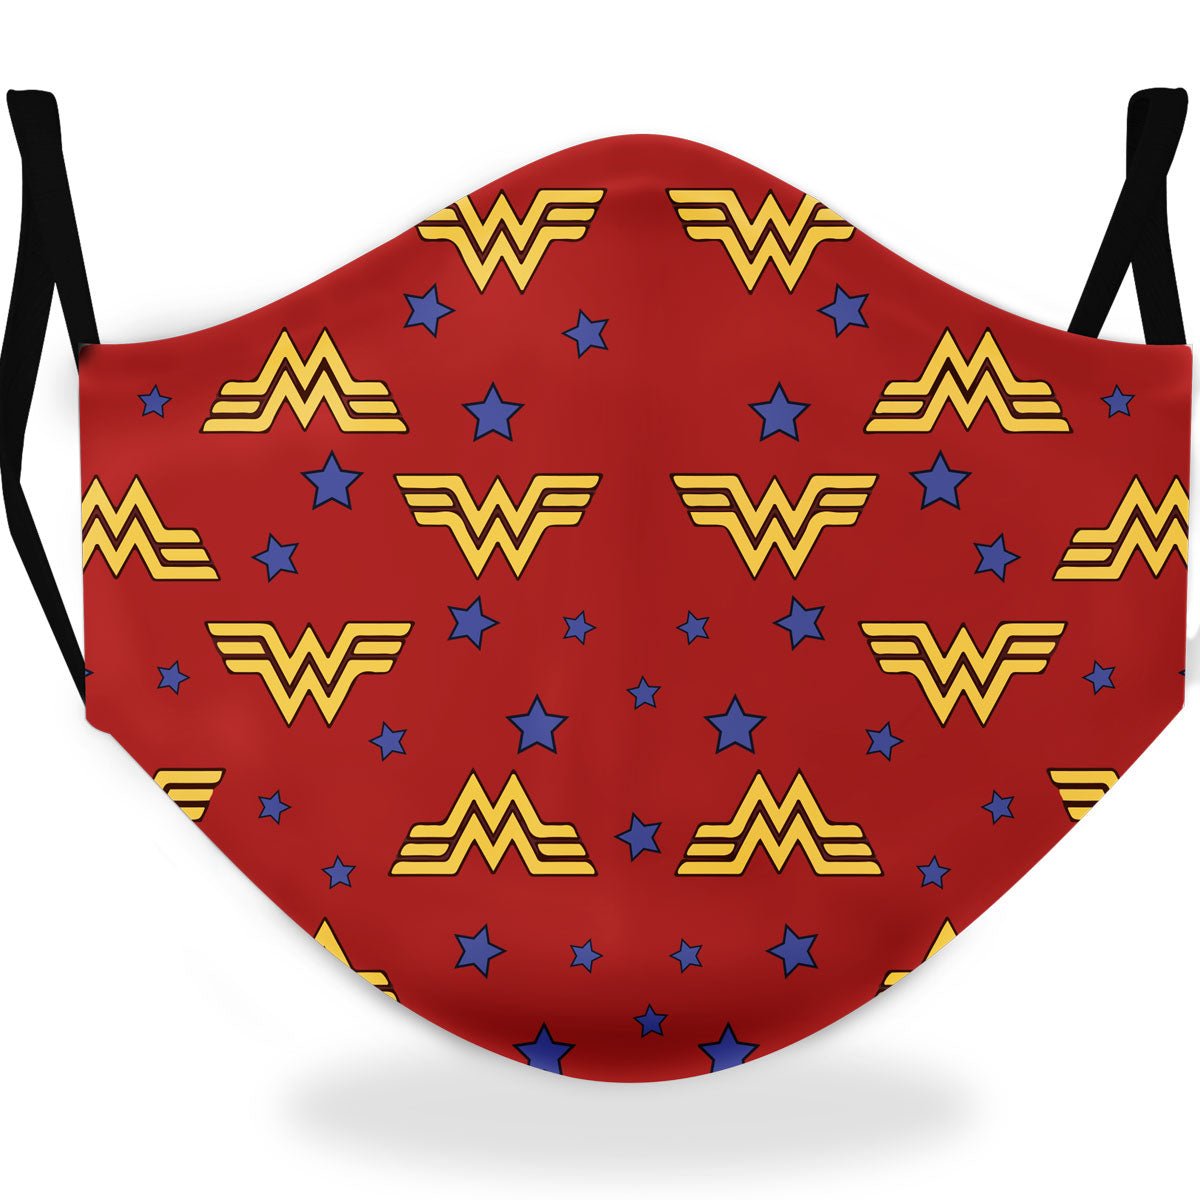 Acquista Costume da carnevale Wonder Woman da bambini Originale